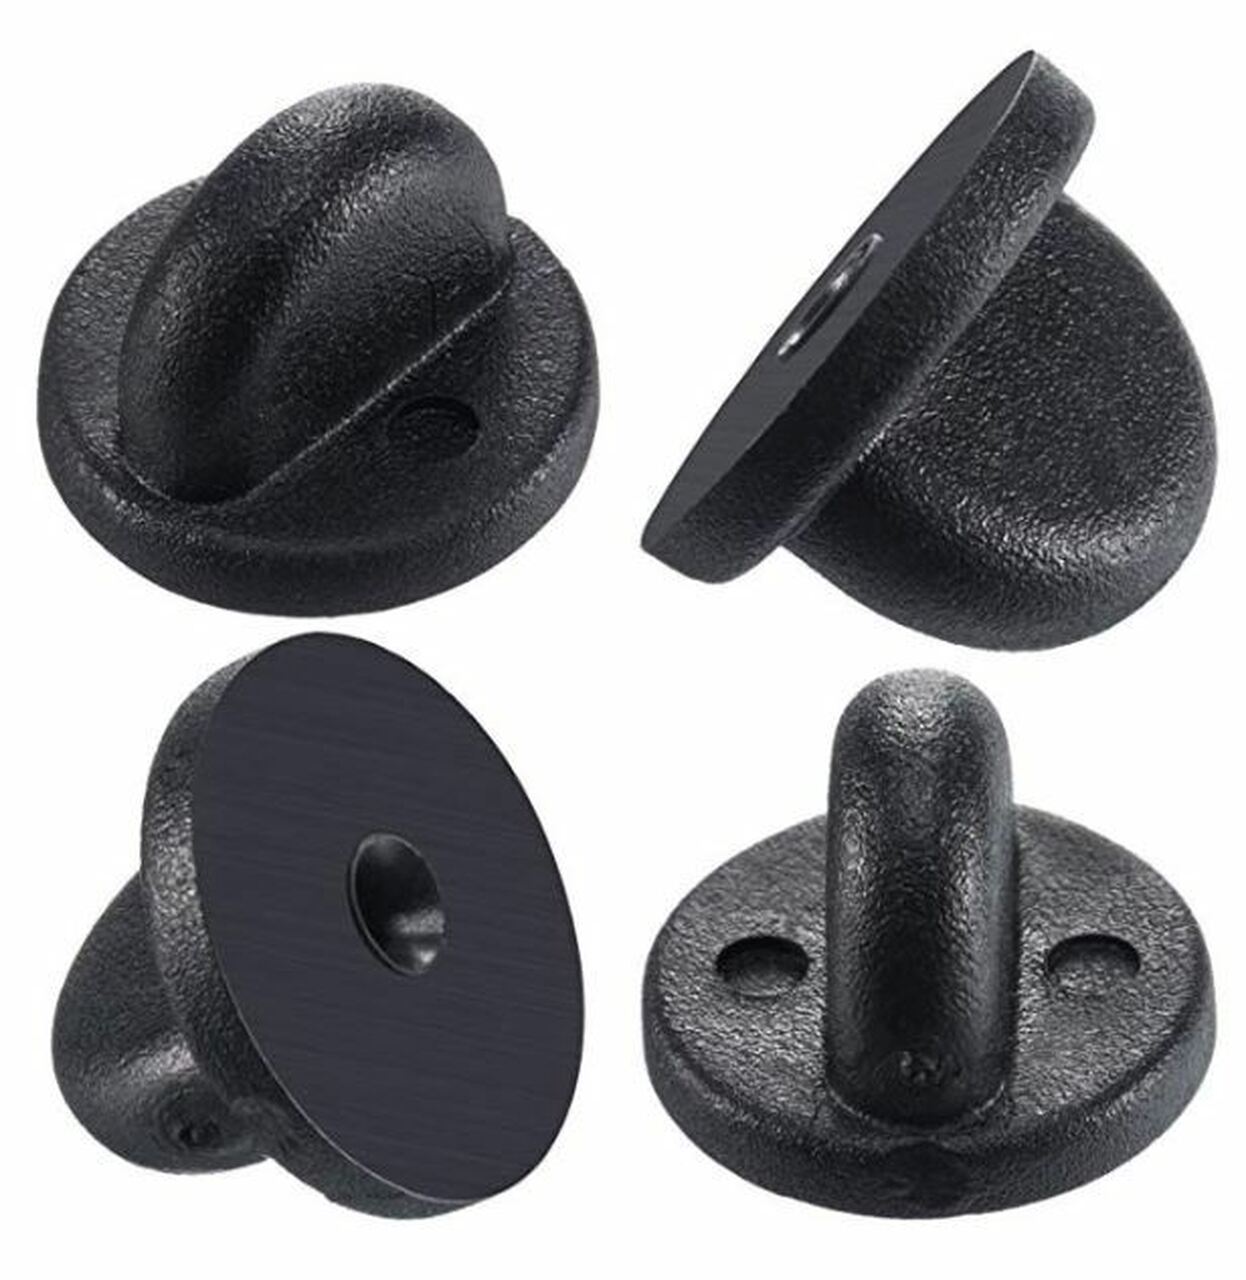 Black PVC Rubber Pin Backs - Set of 12